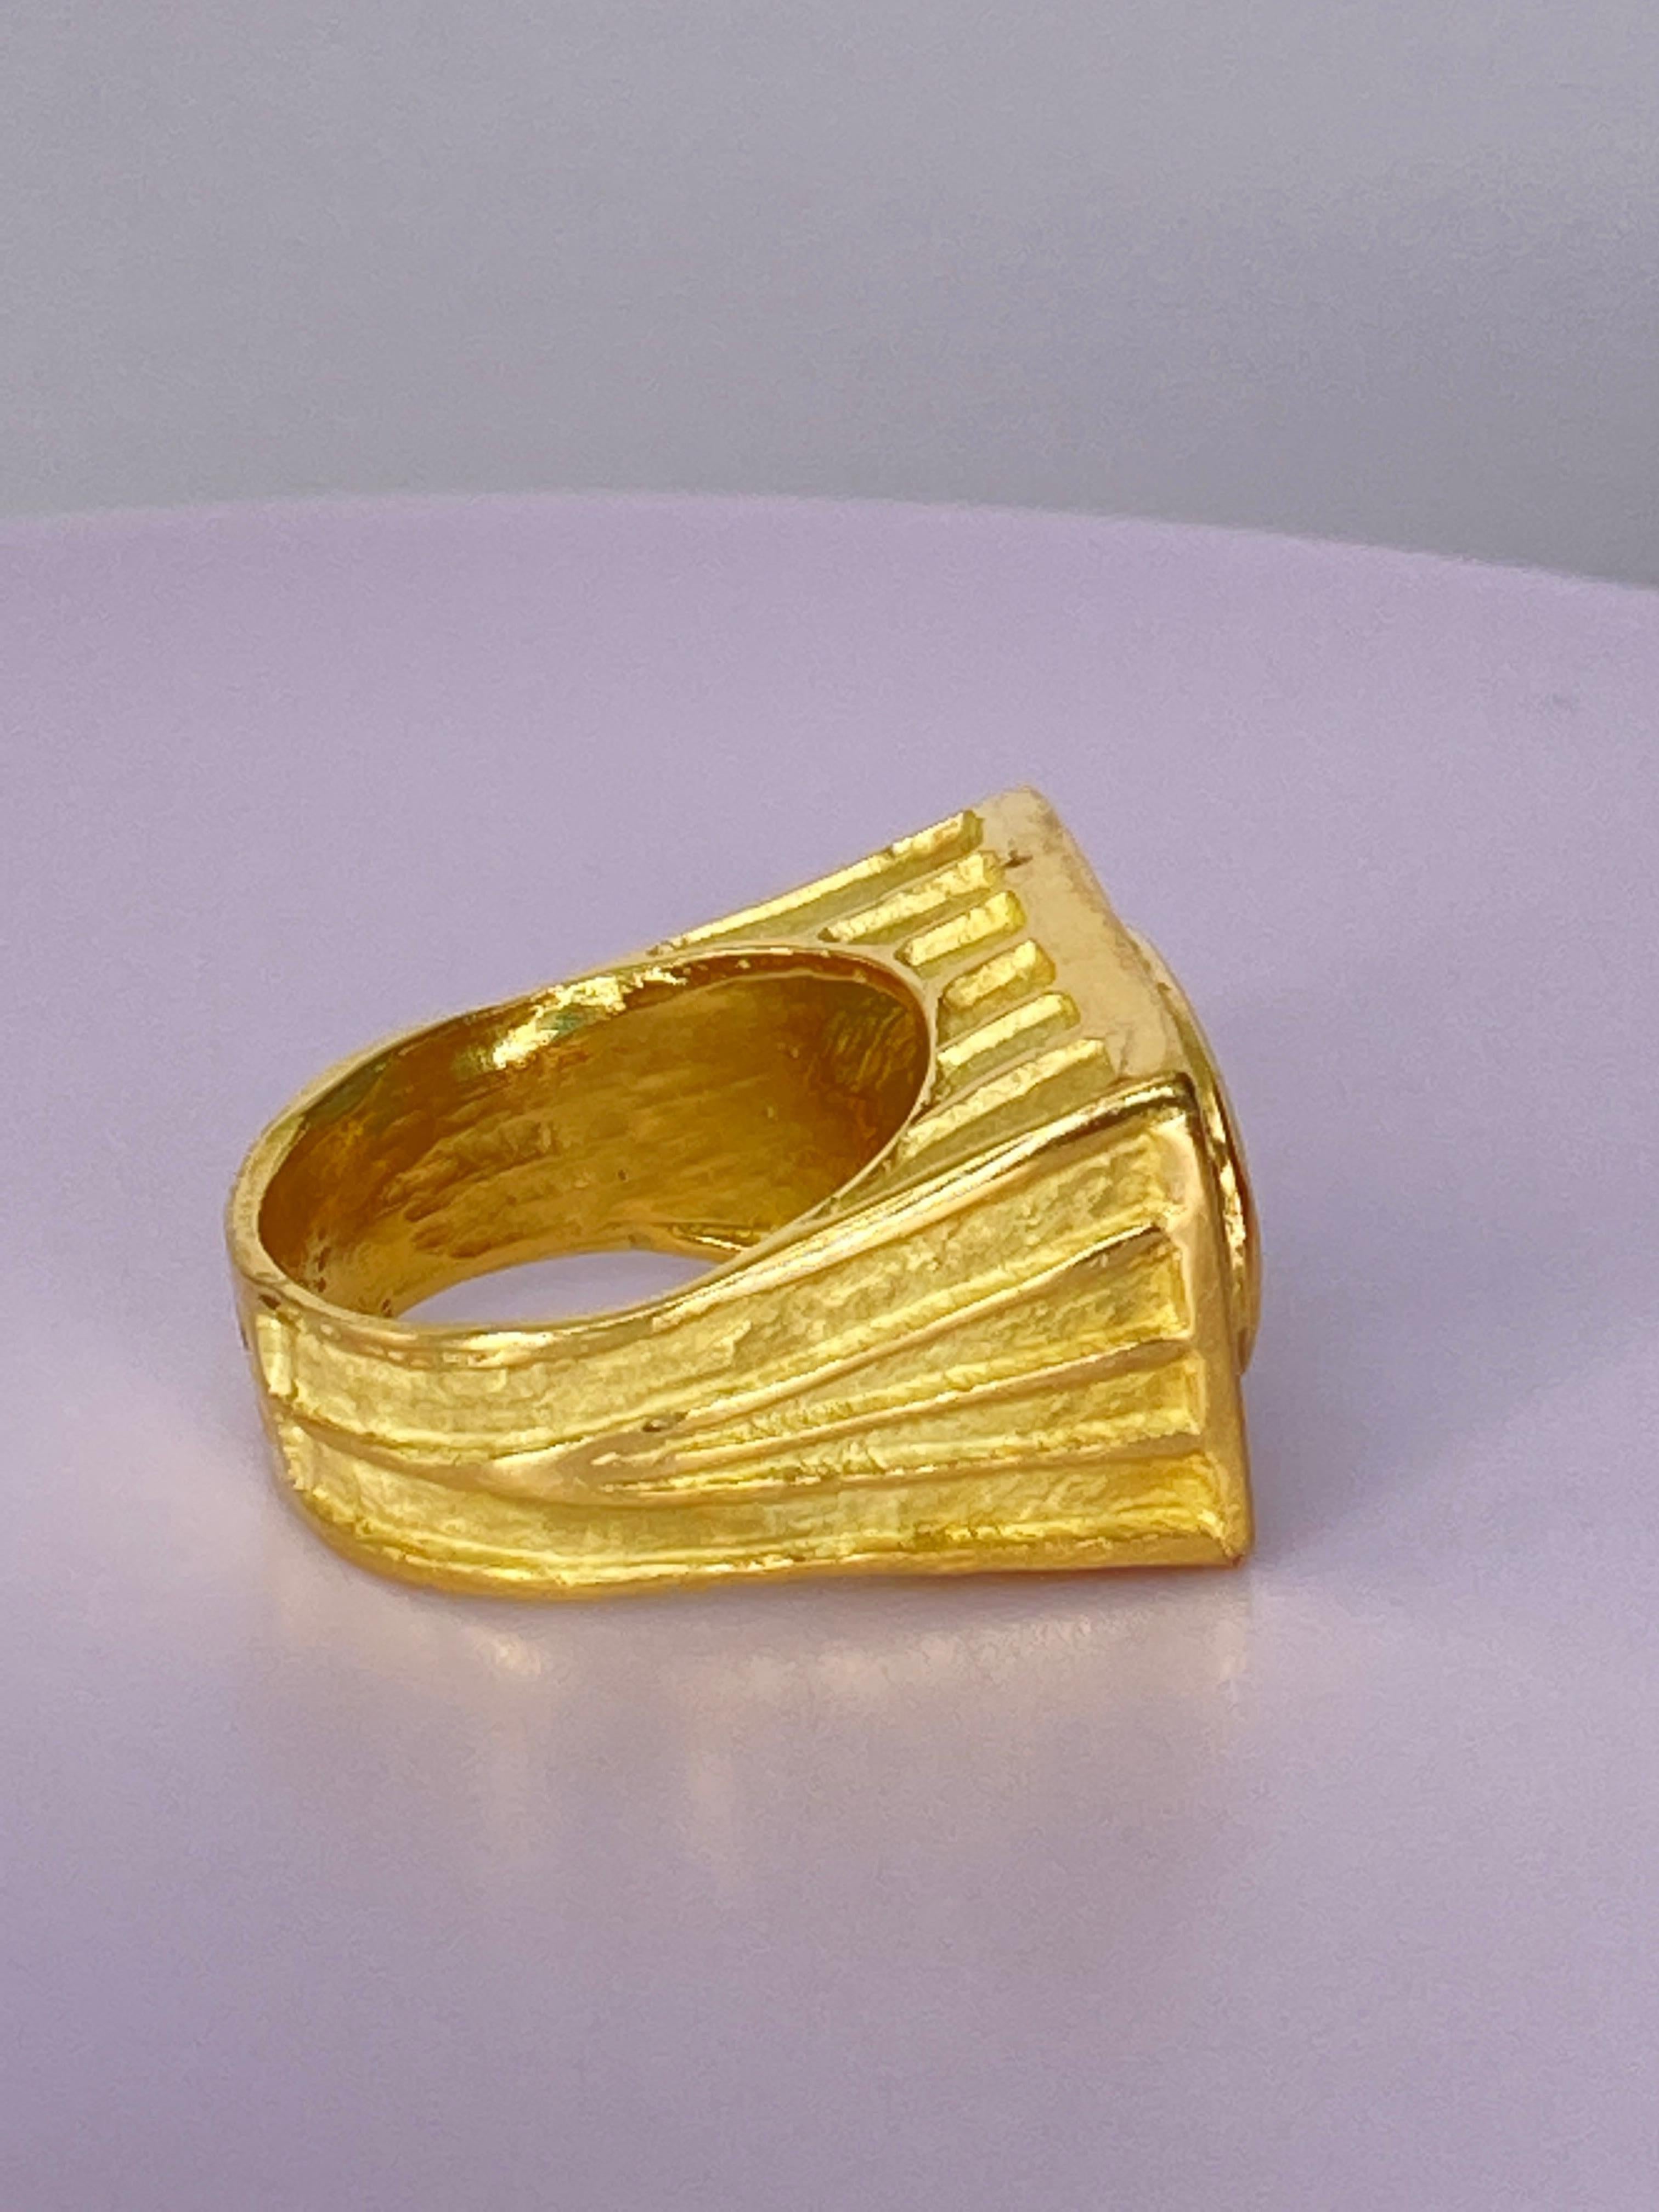 Medieval 5 Carat  Paraiba Tourmaline and Diamond Ting 18 Karat Yellow Gold For Sale